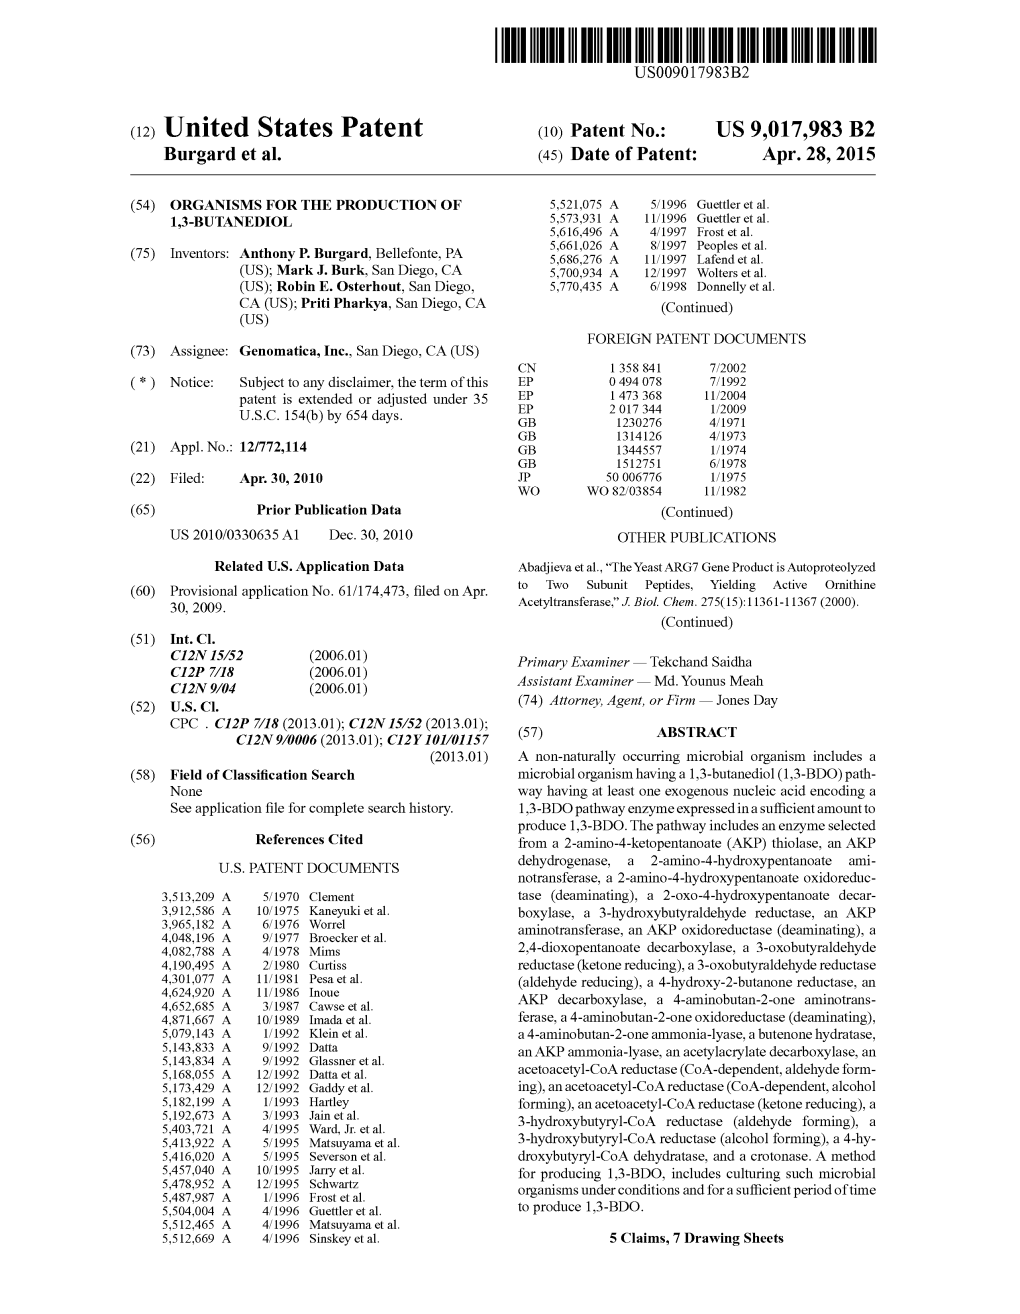 (12) United States Patent (10) Patent No.: US 9,017,983 B2 Burgard Et Al